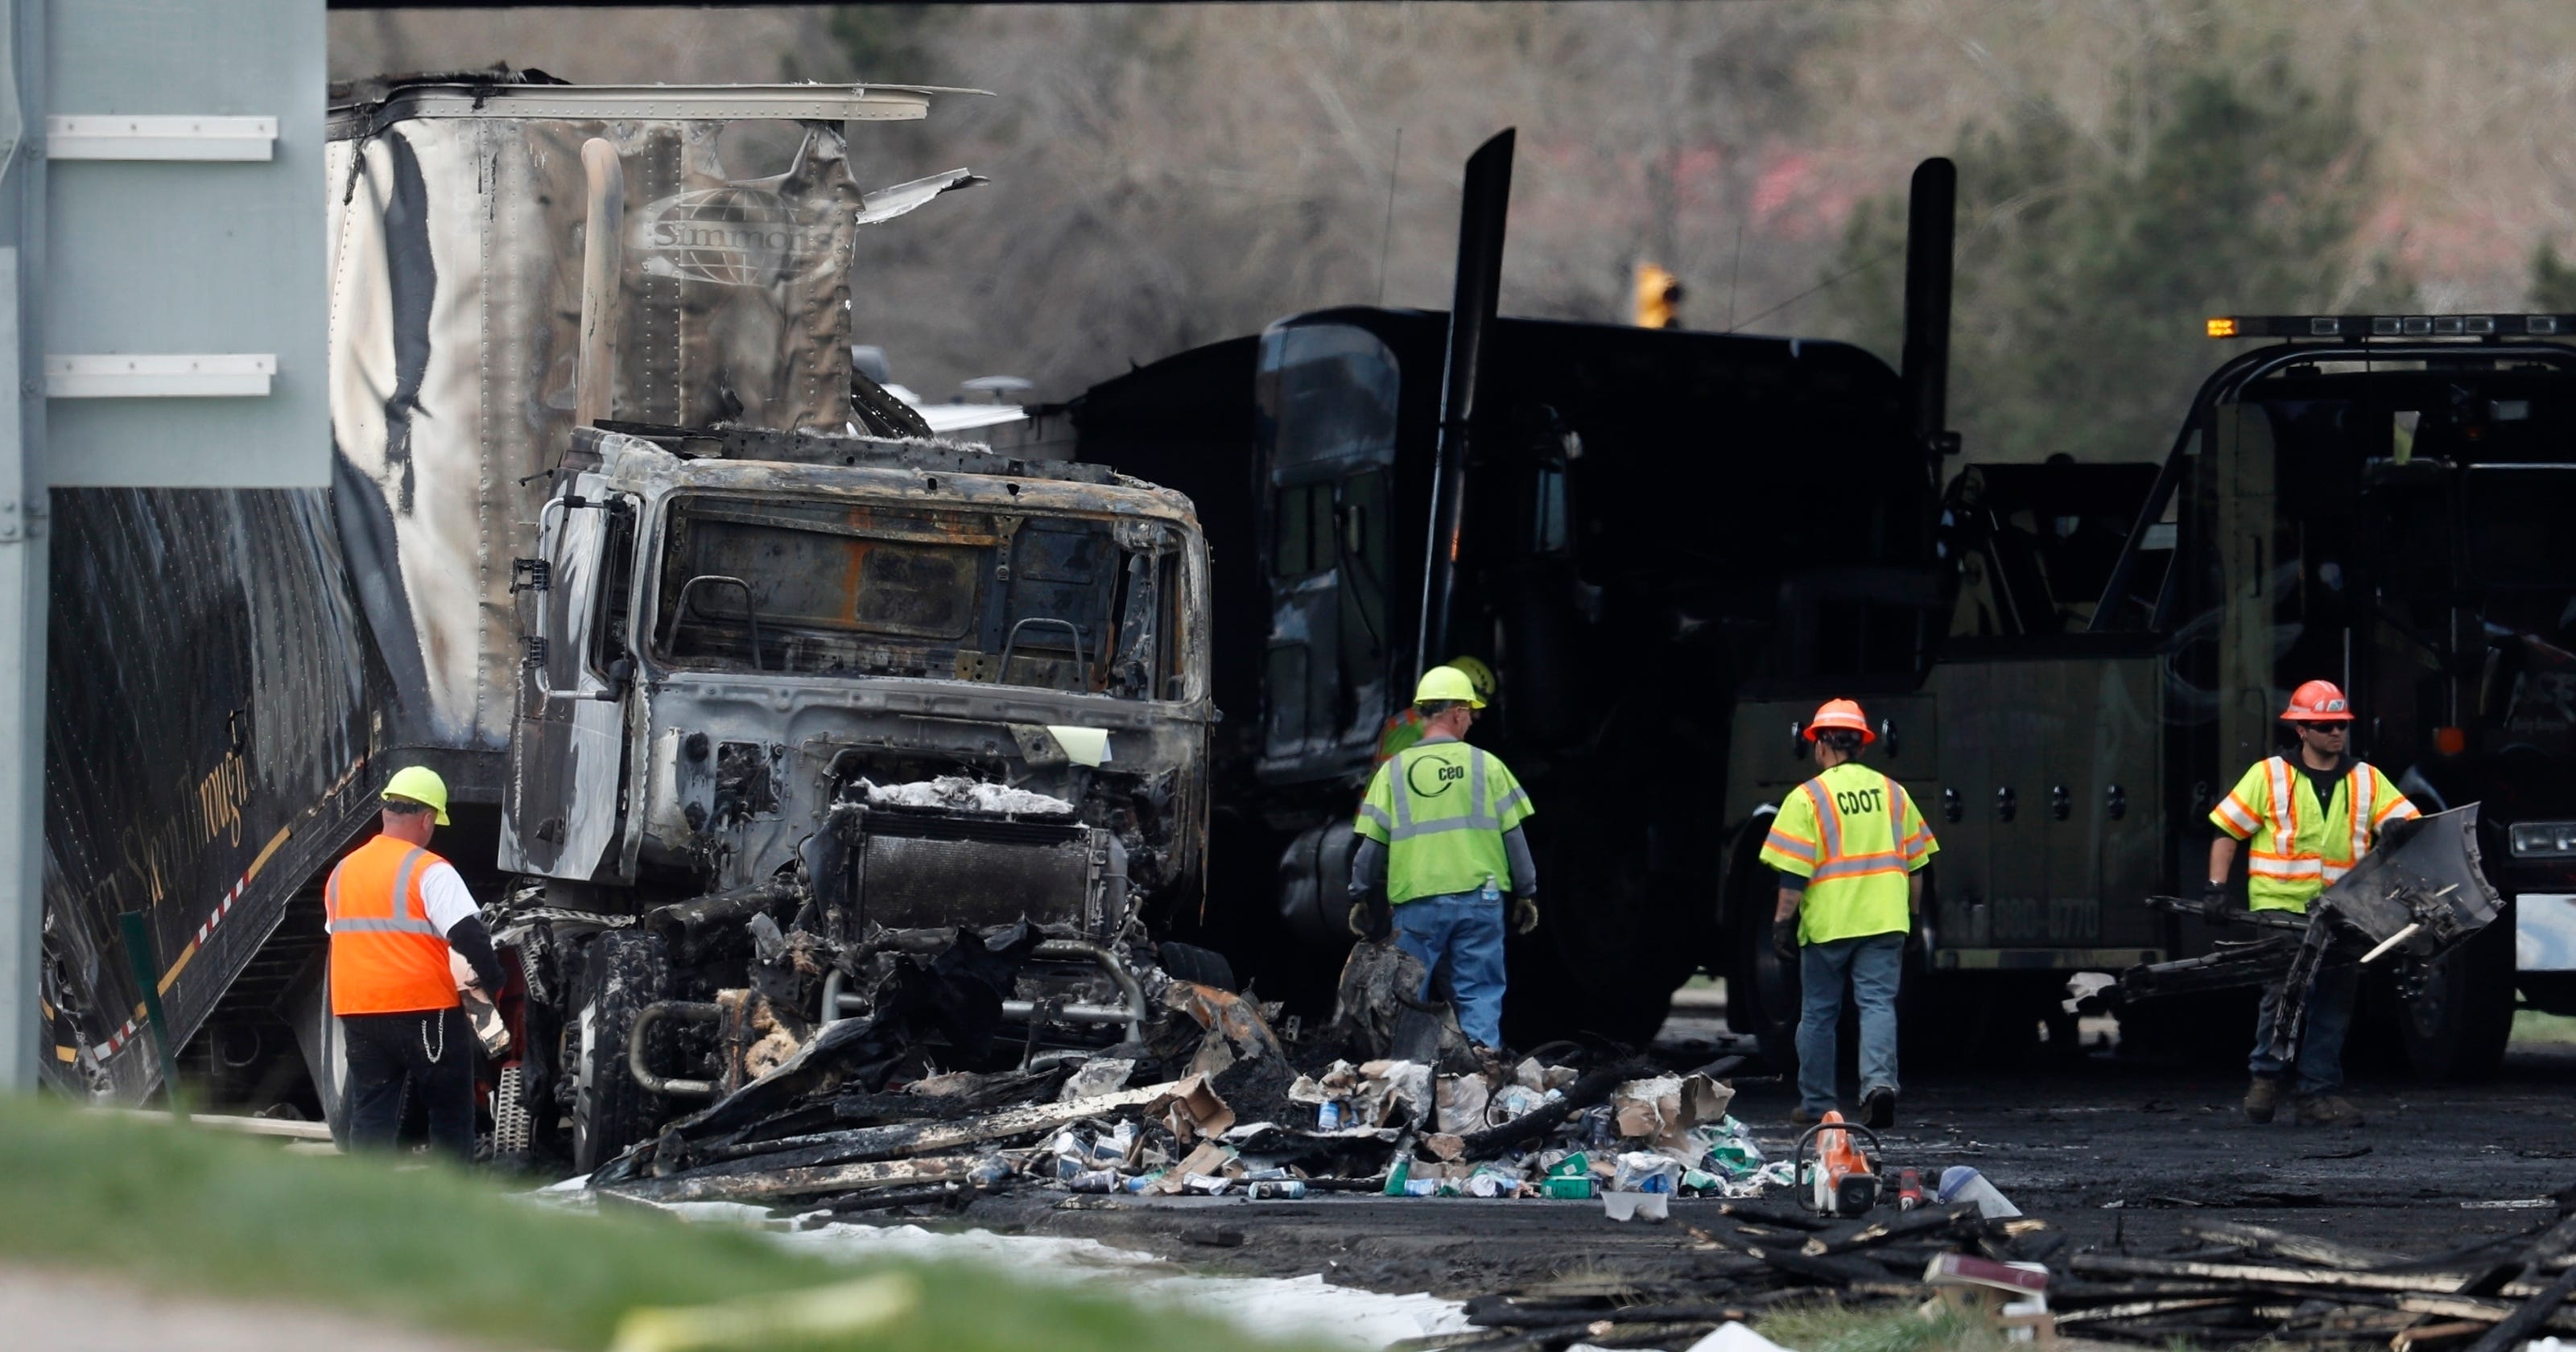 4 people killed in fiery crash near Denver